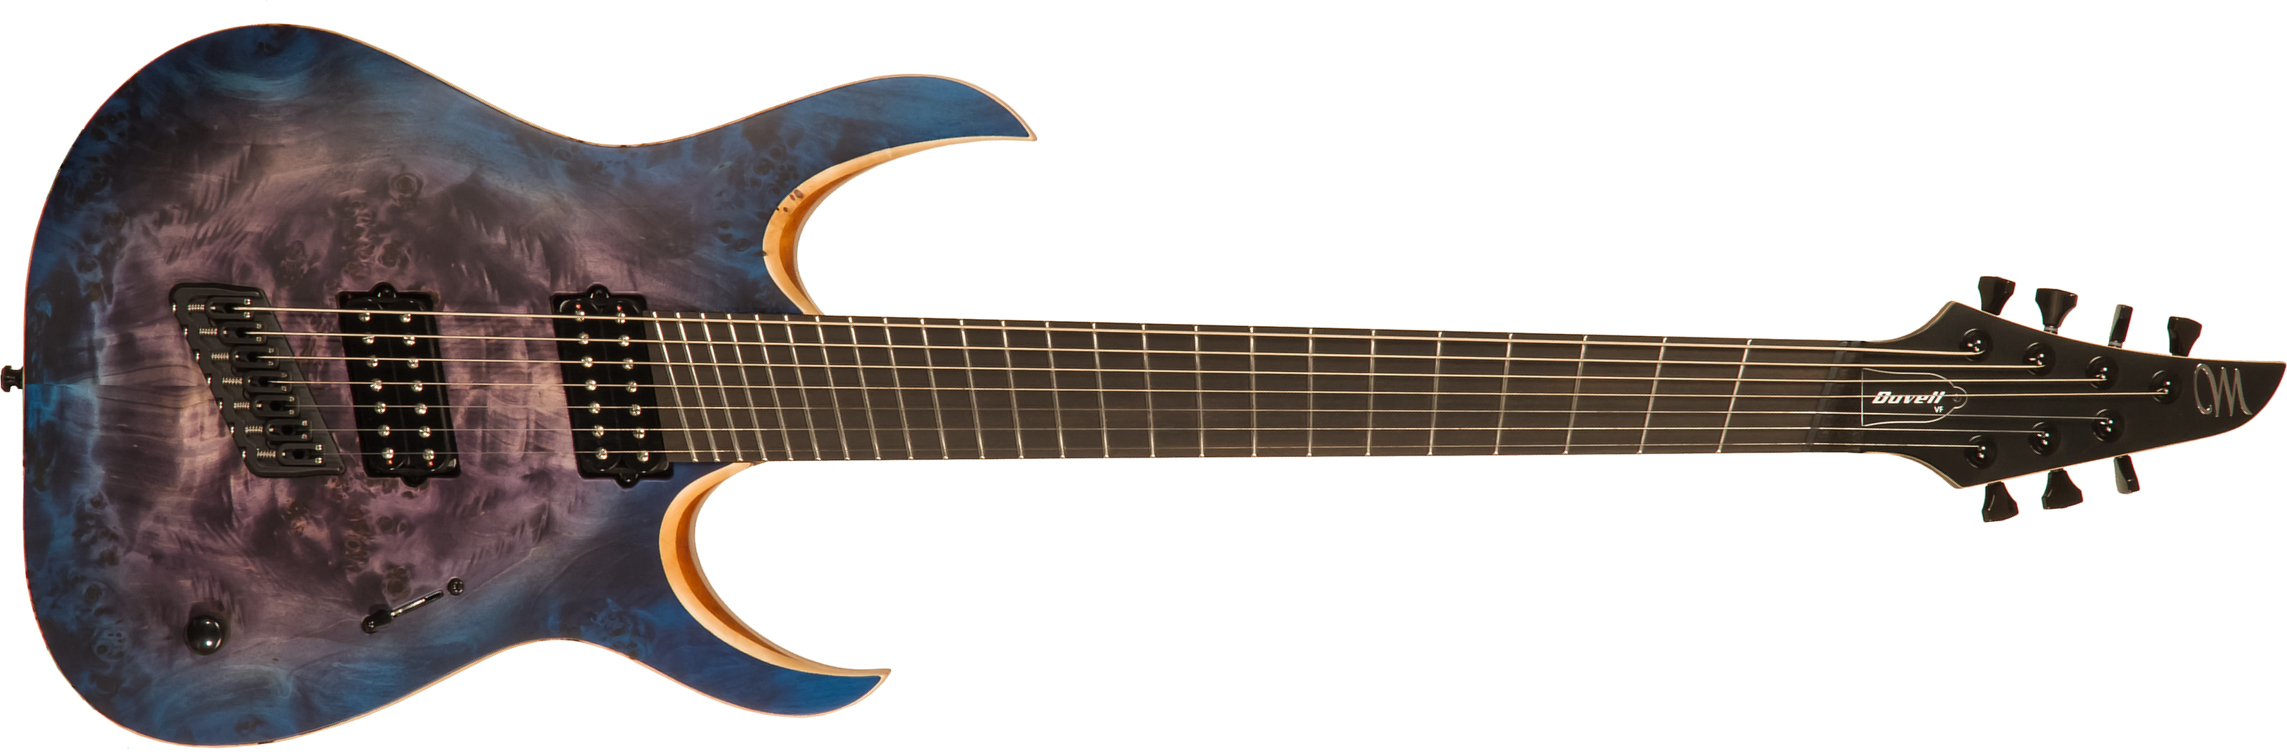 Mayones Guitars Duvell Elite V-frets 7c Hh Bare Knuckle Ht Eb - Jeans Black 3-tone Blue Burst Satin - Guitare Électrique Multi-scale - Main picture